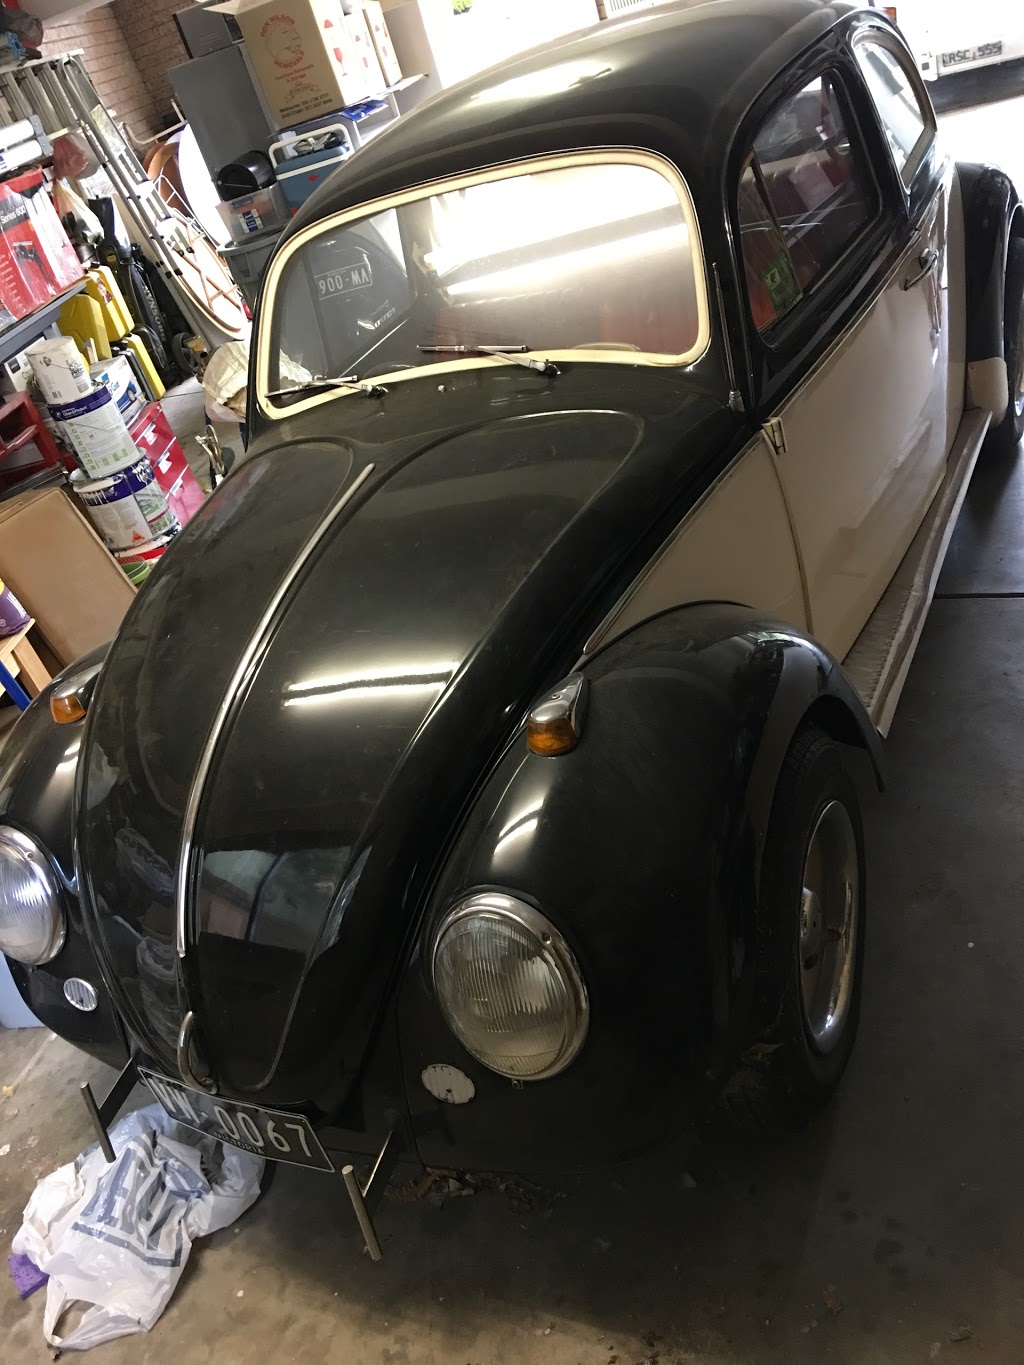 The VW Garage | car repair | 39 Wynnstay Rd, Mount Eliza VIC 3930, Australia | 0416262841 OR +61 416 262 841